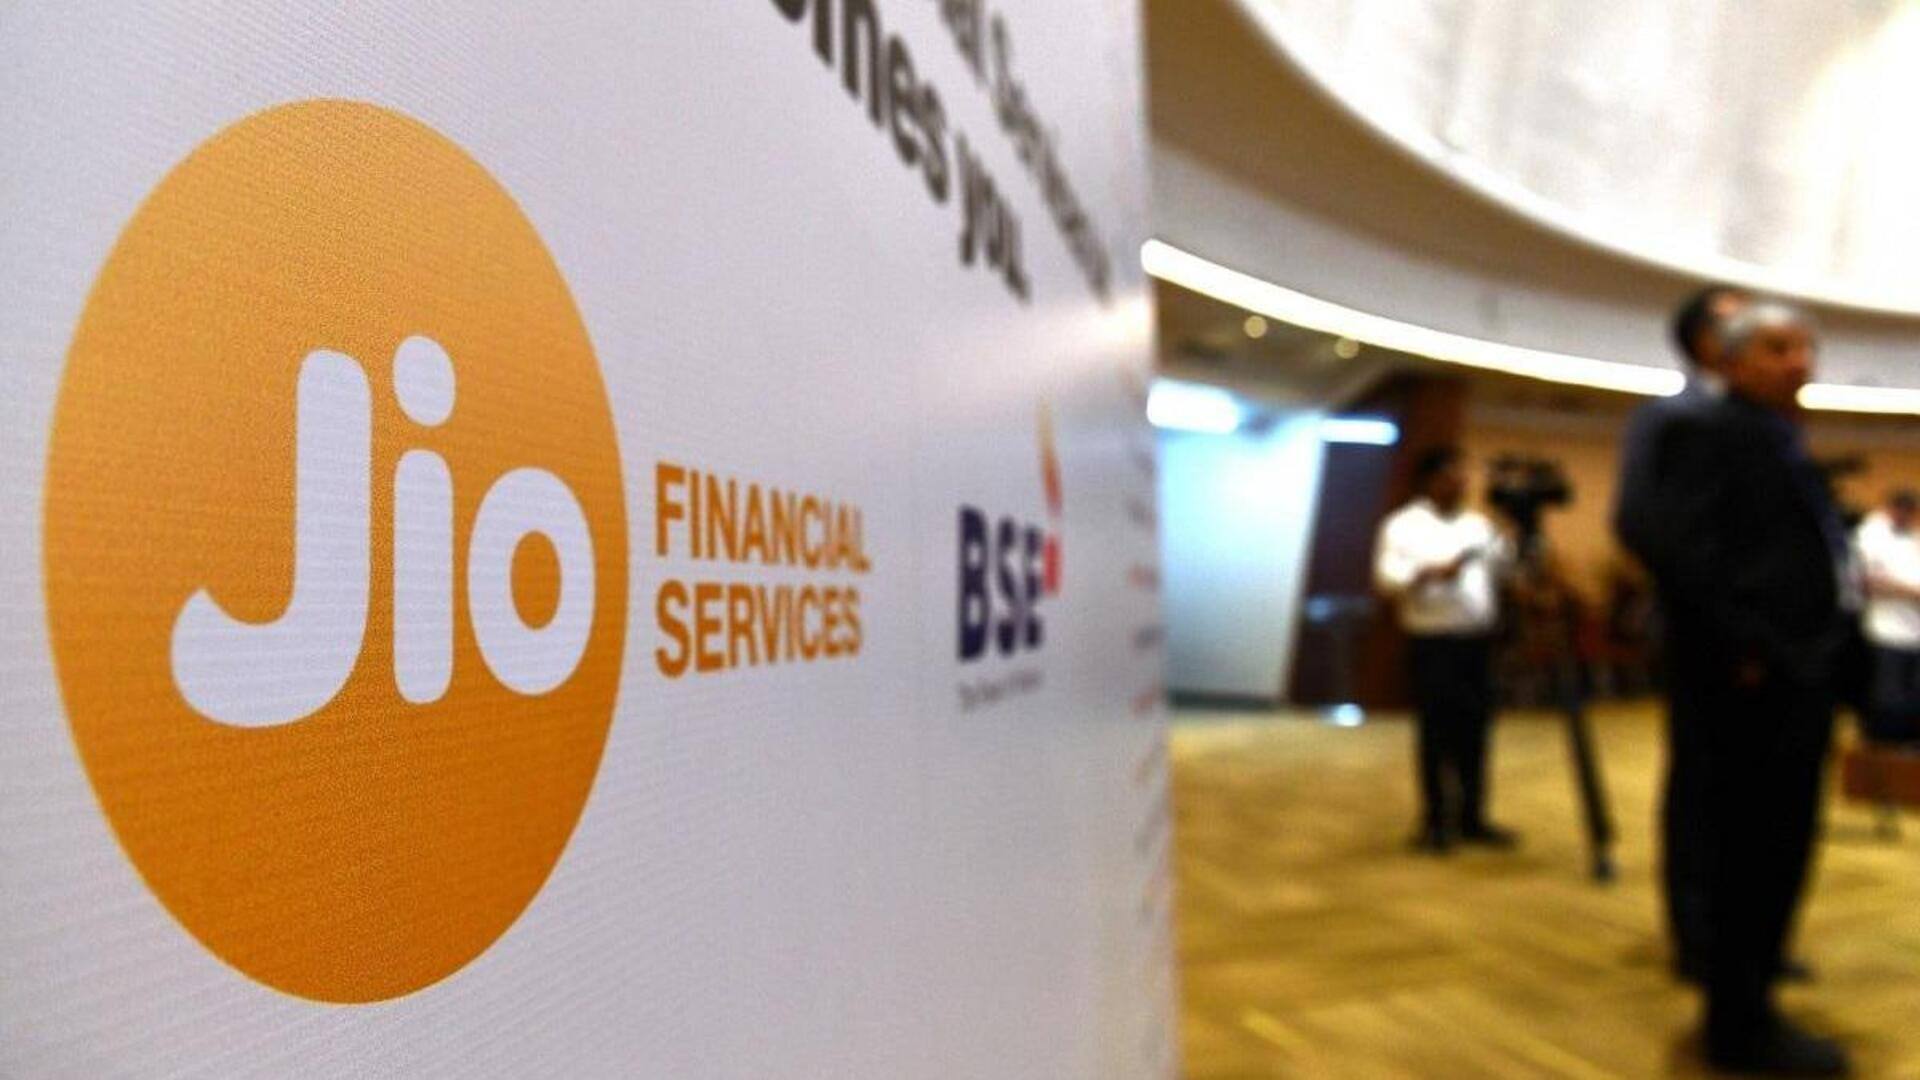 Jio Financial Services's market cap crosses Rs. 2 lakh crore